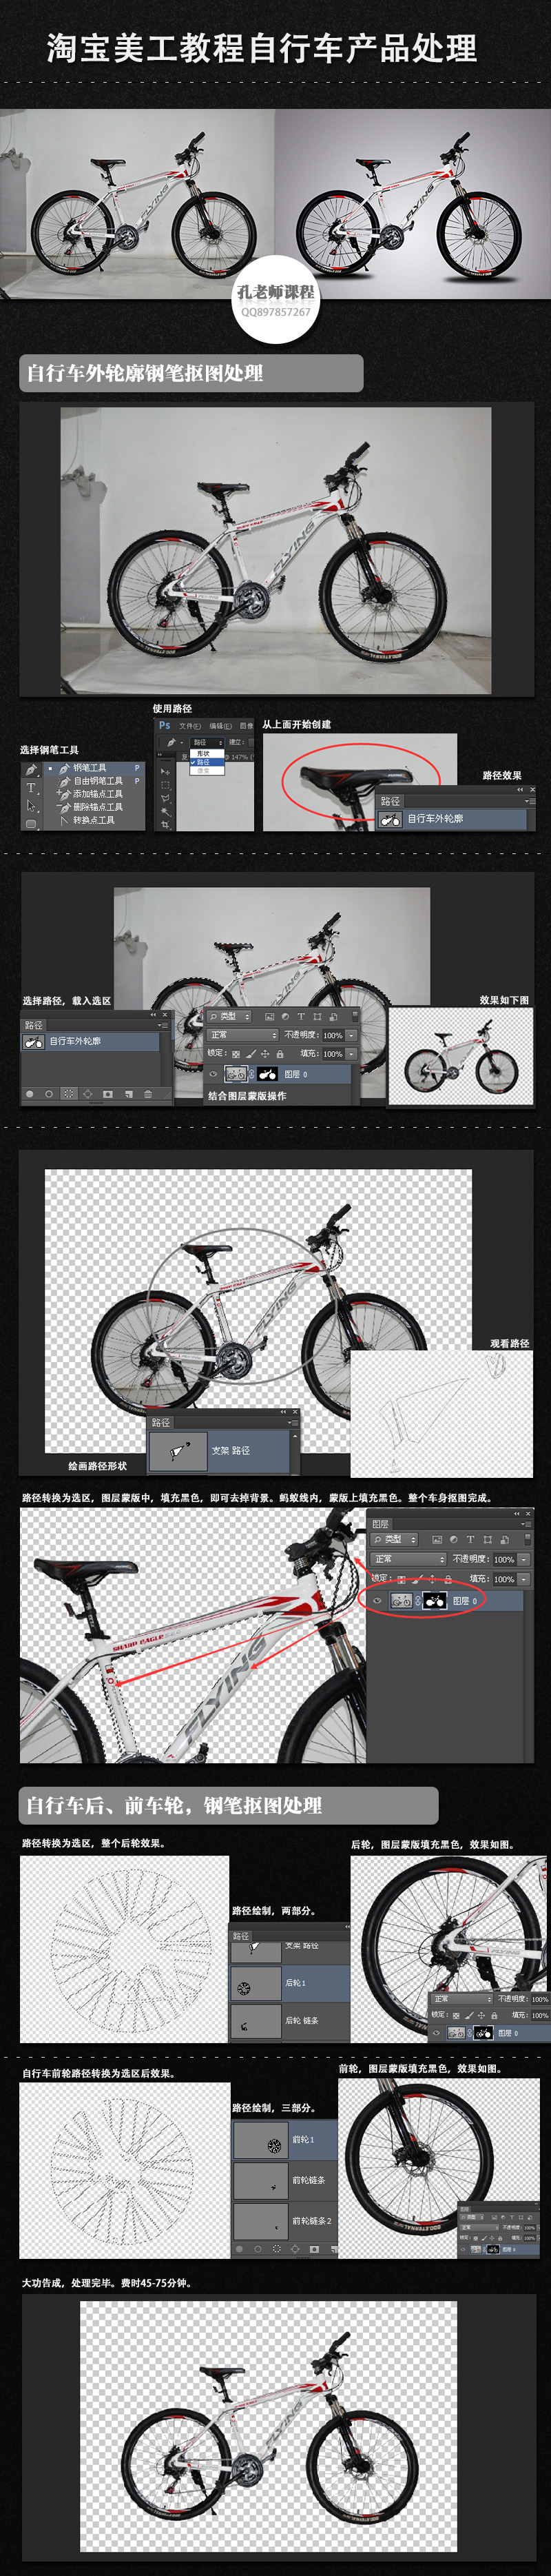 淘宝美工教程 Photoshop自行车产品修图处理 